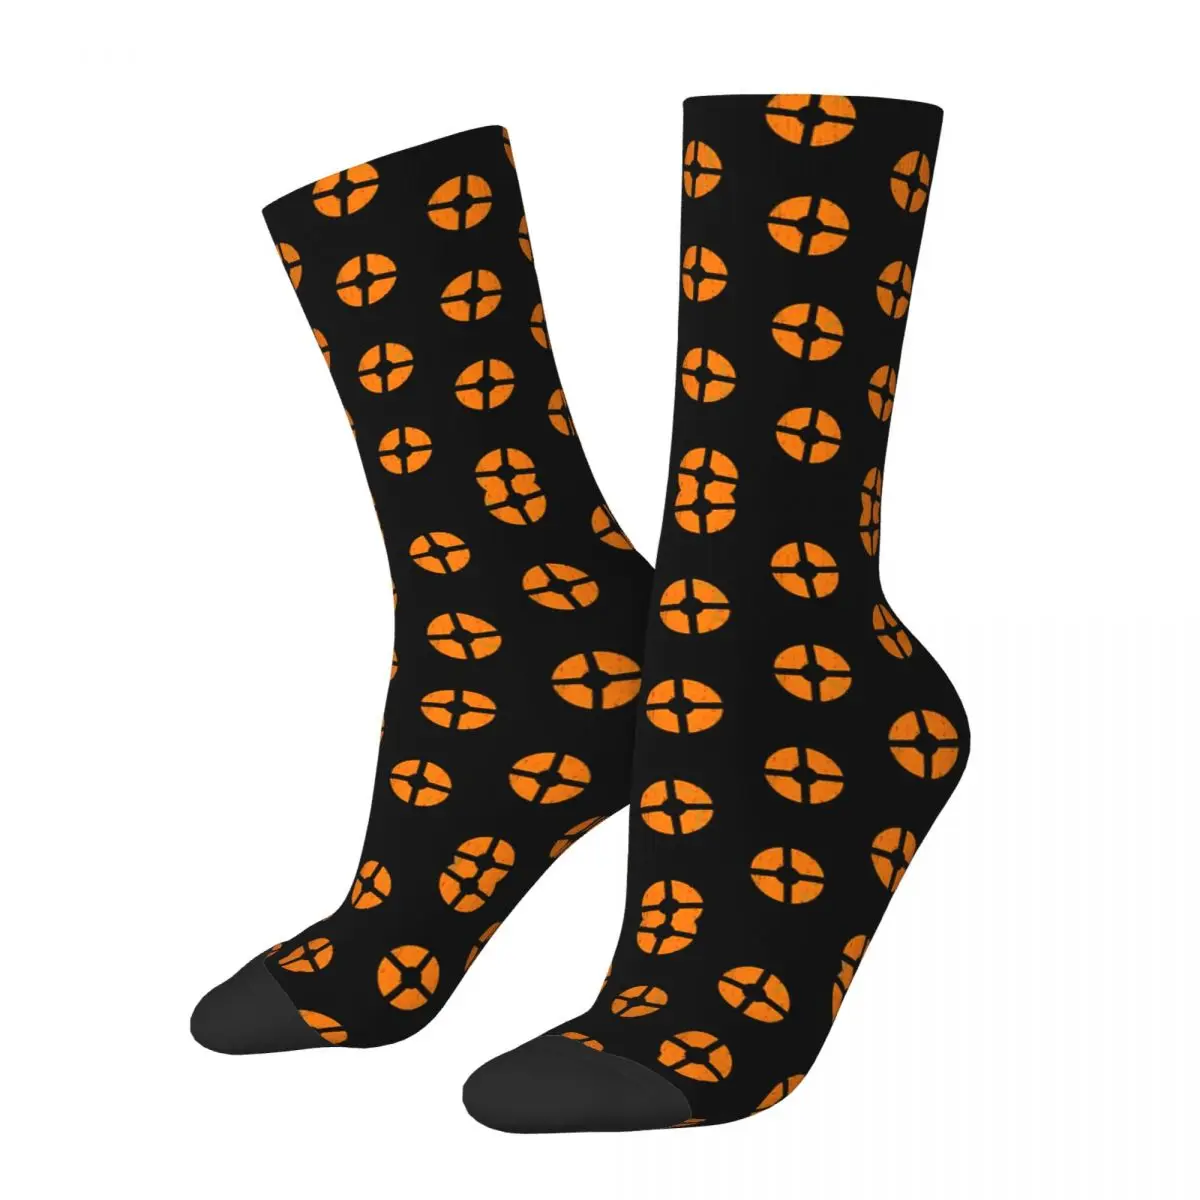 Симпатичные чулки Fortress Of Team Symbol R92, лучшая покупка, саркастические эластичные носки контрастного цвета